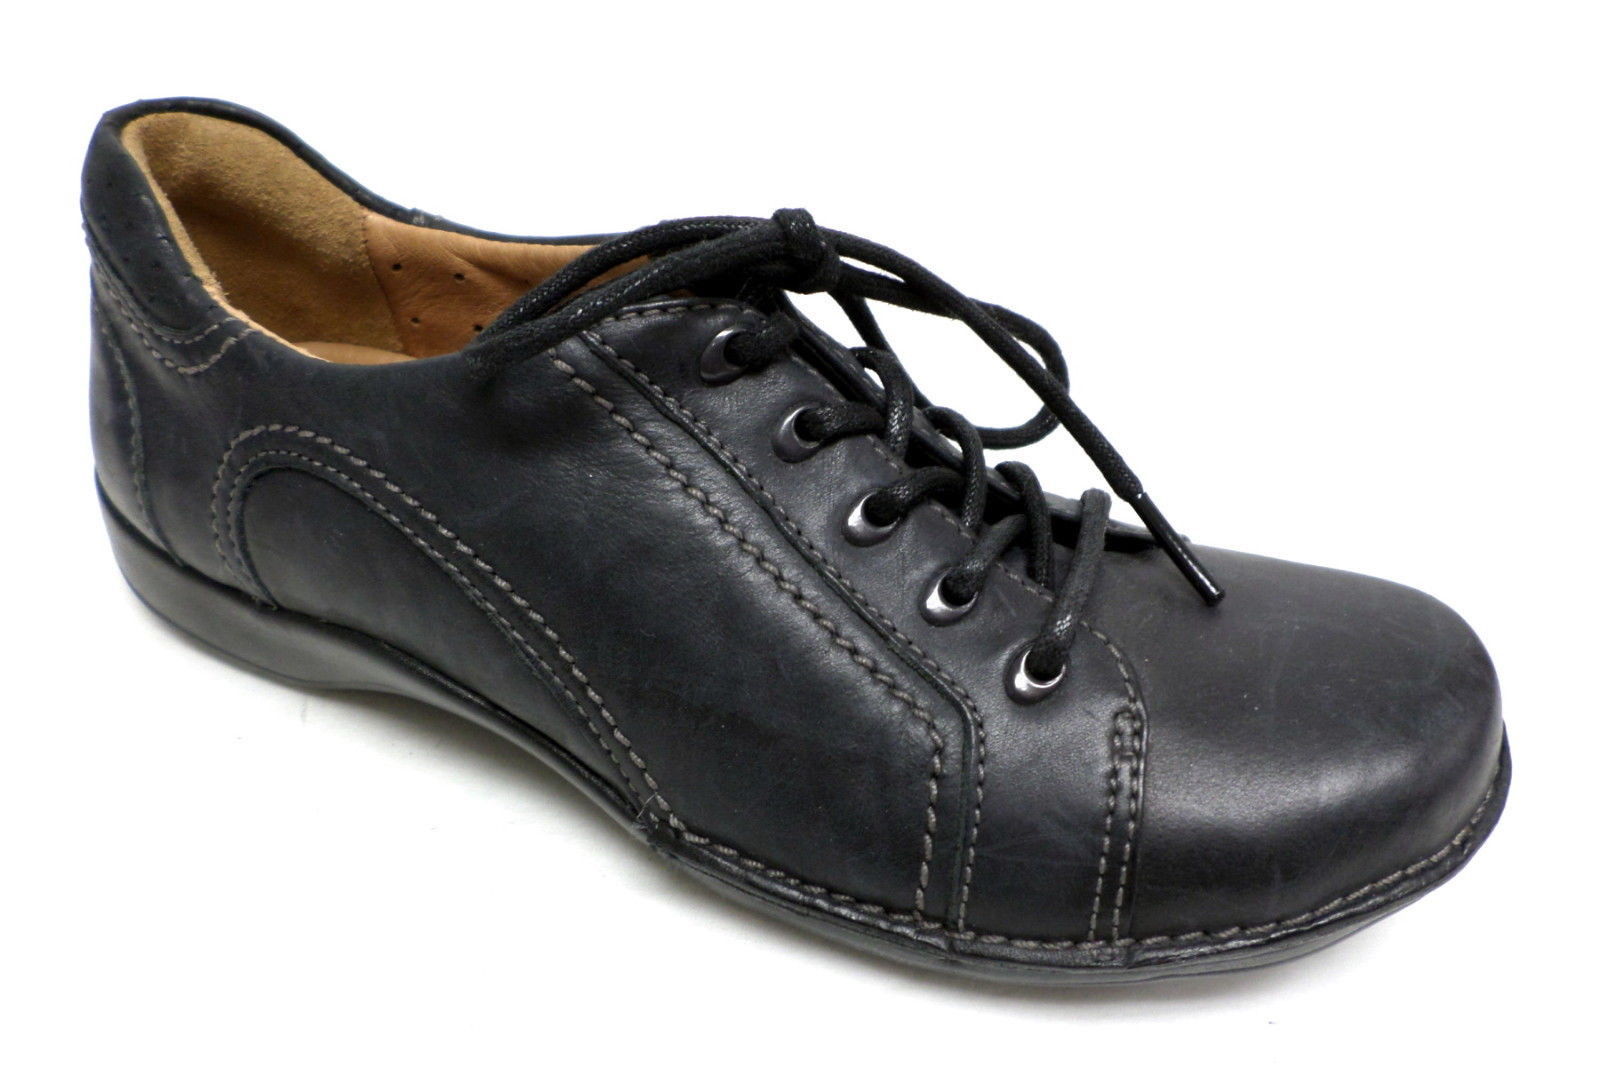 clarks black shoes size 5